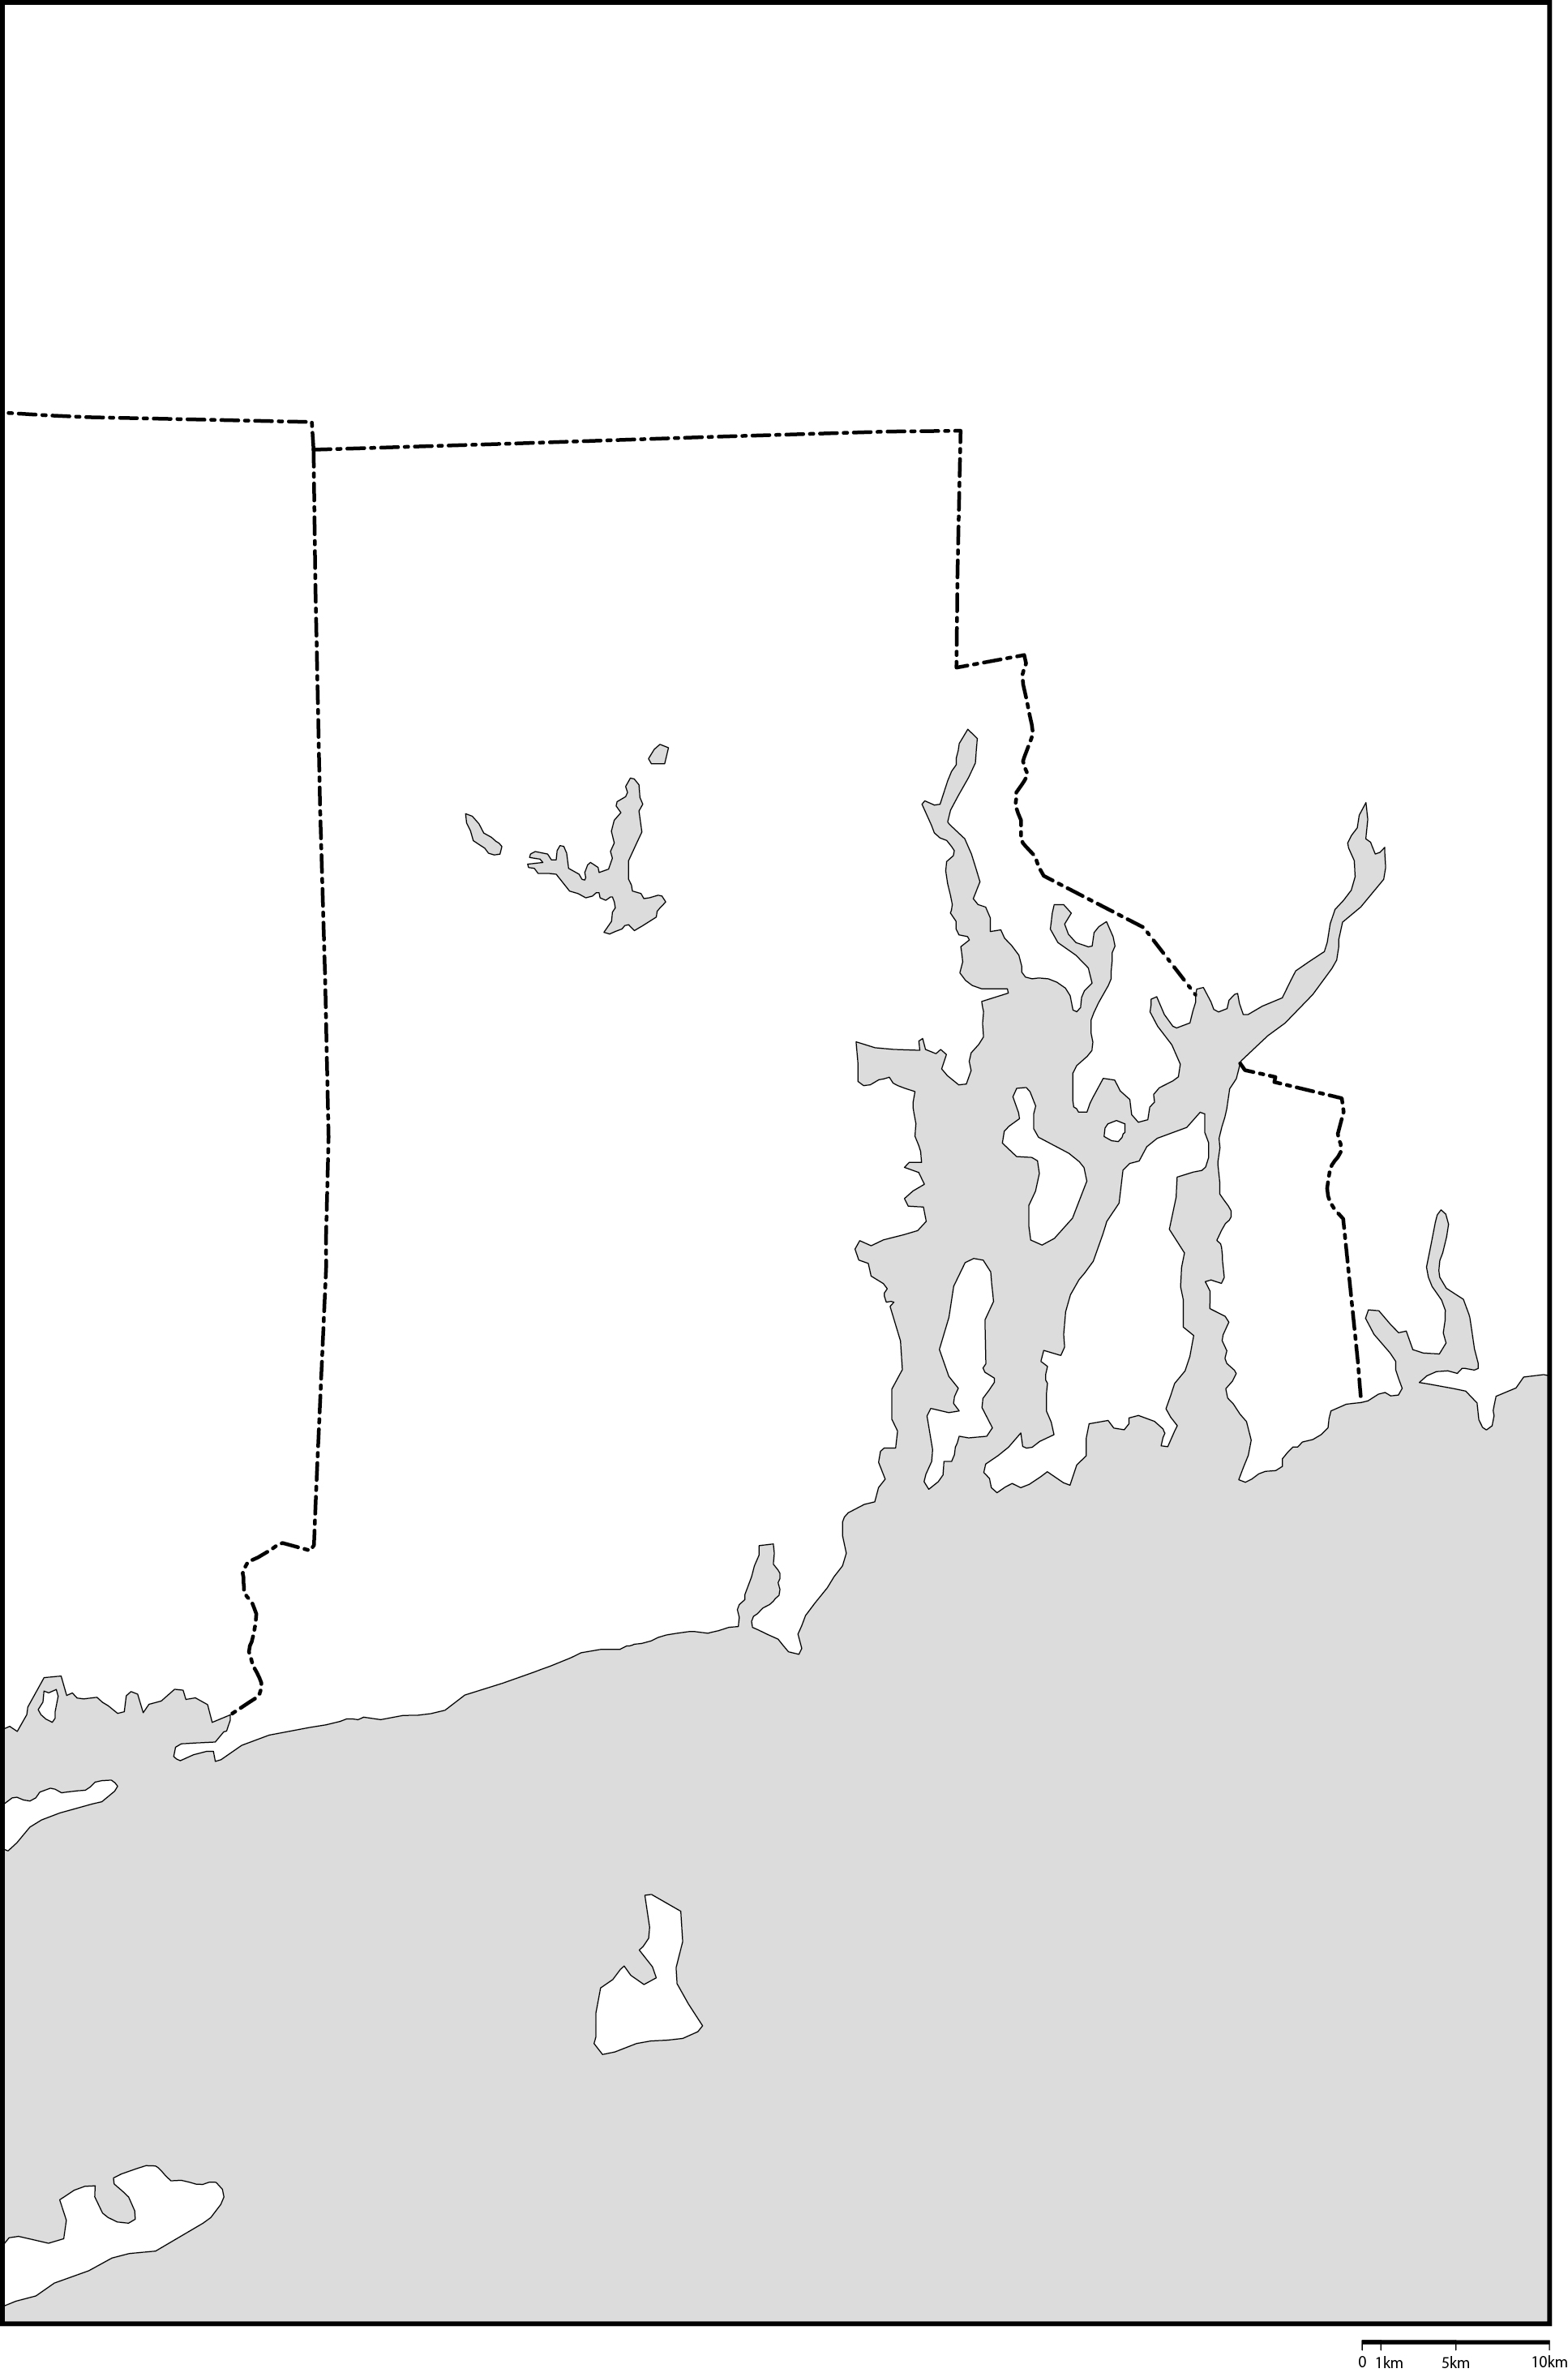 ロードアイランド州白地図フリーデータの画像